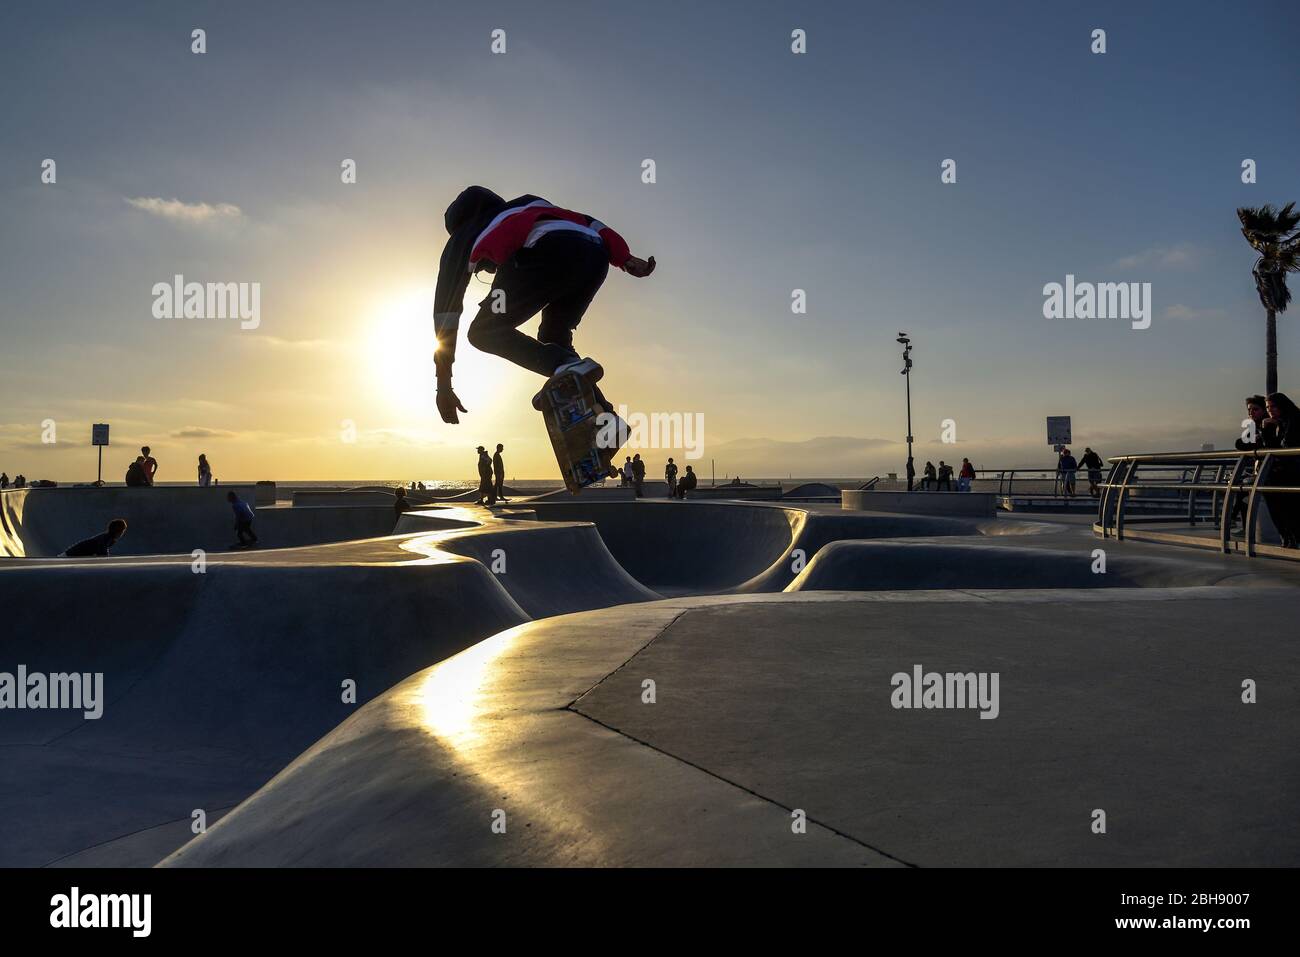 Skater mit seinem Skateboard beim Springen im Skate Park in Los Angeles, Sonnenuntergang, Zuschauer am Rand der Skate Bahn Stock Photo